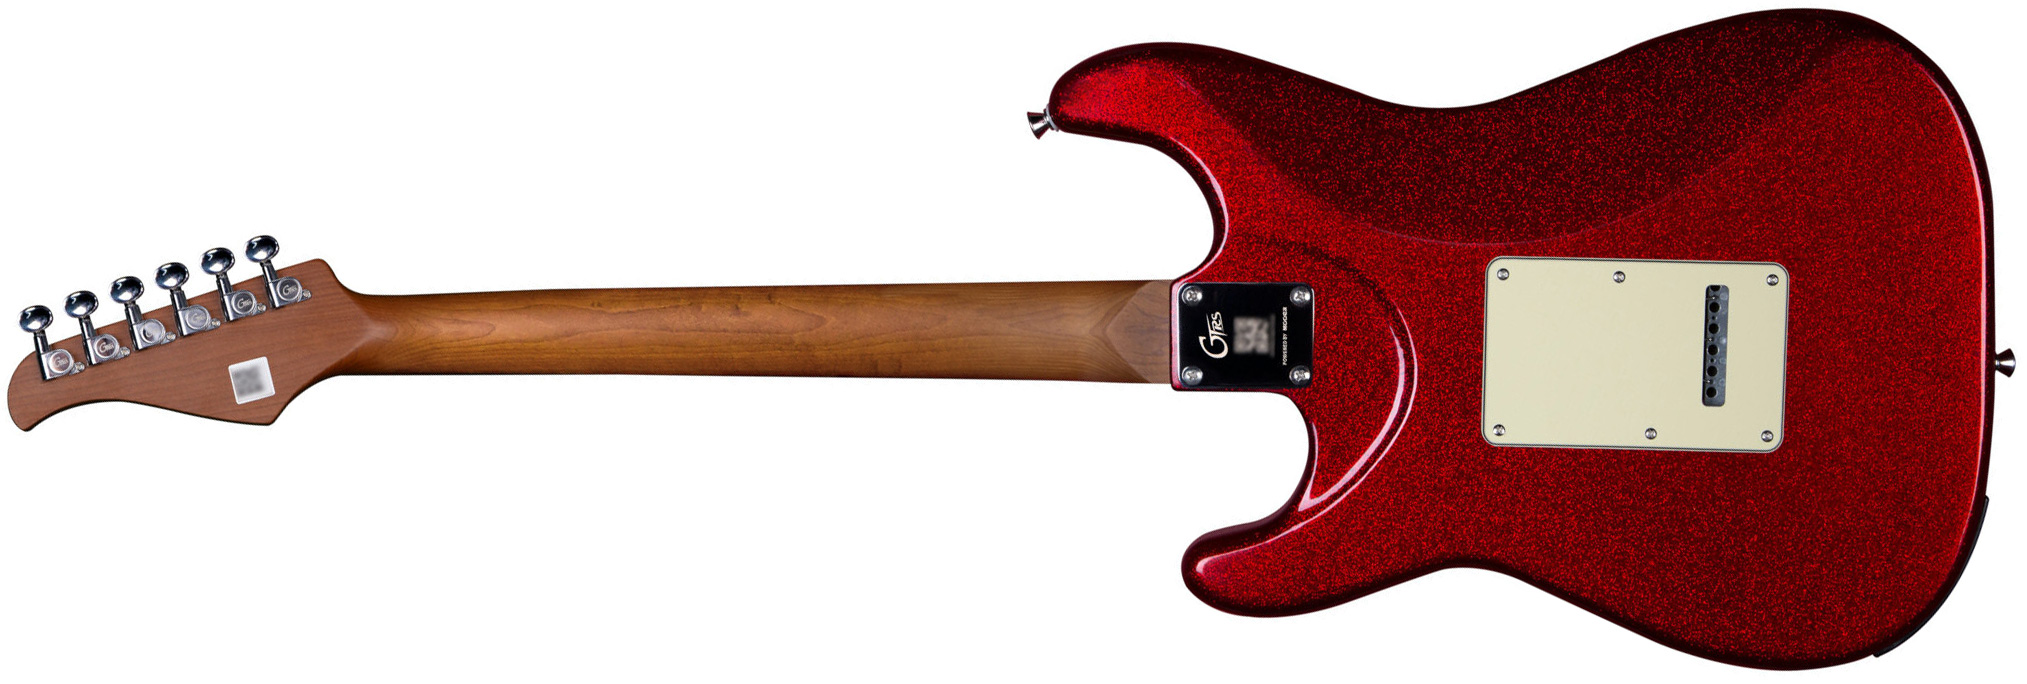 Mooer Gtrs S800 Hss Trem Rw - Metal Red - Guitarra eléctrica de modelización - Variation 1